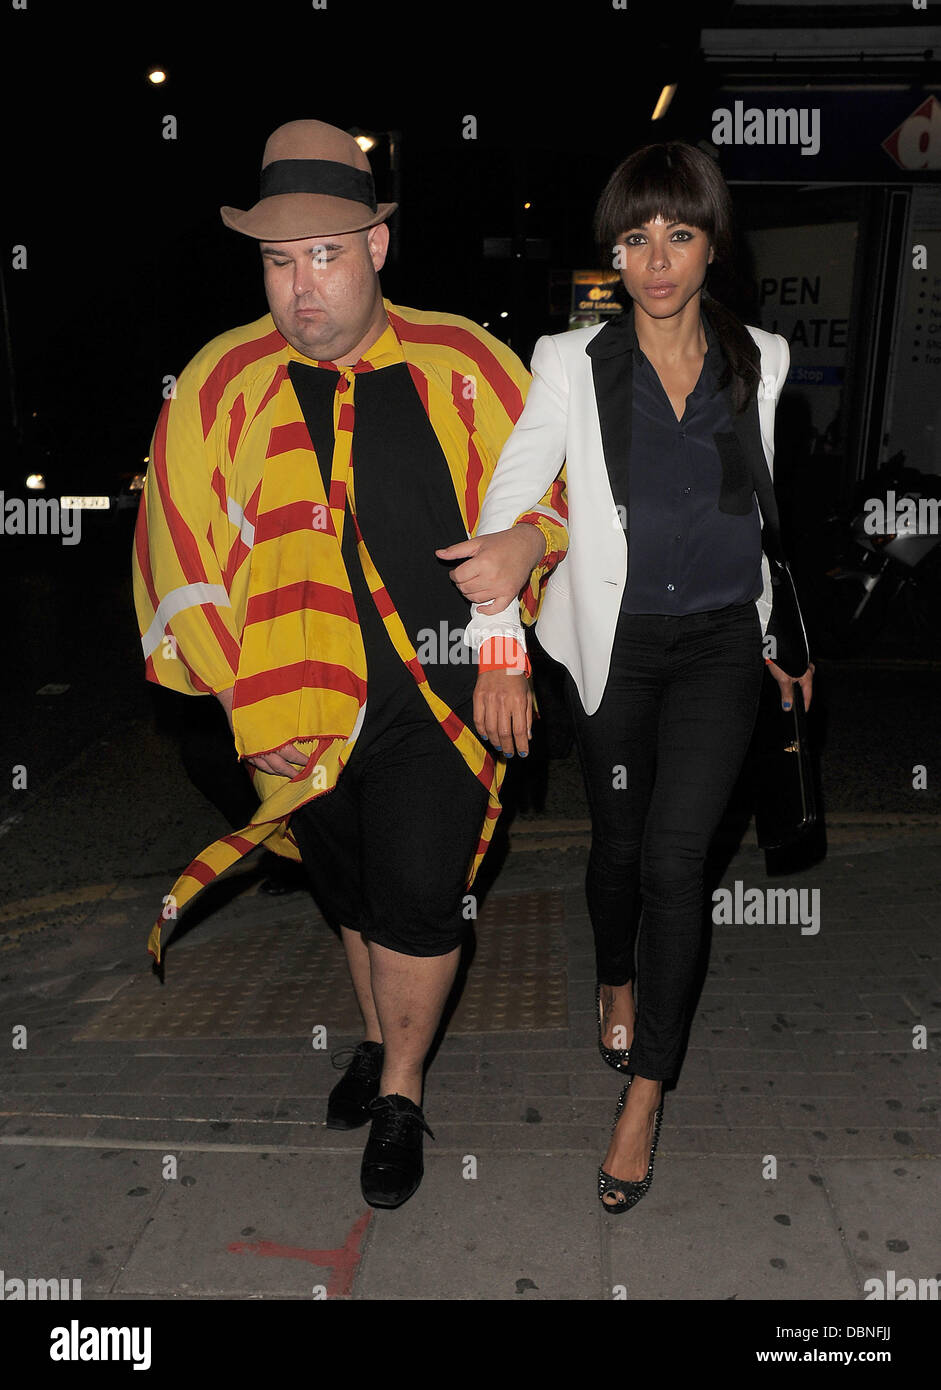 Ana Araujo y extrañamente vestido compañero dejando un pub en Kilburn. Londres, Inglaterra - 28.07.11 Foto de stock